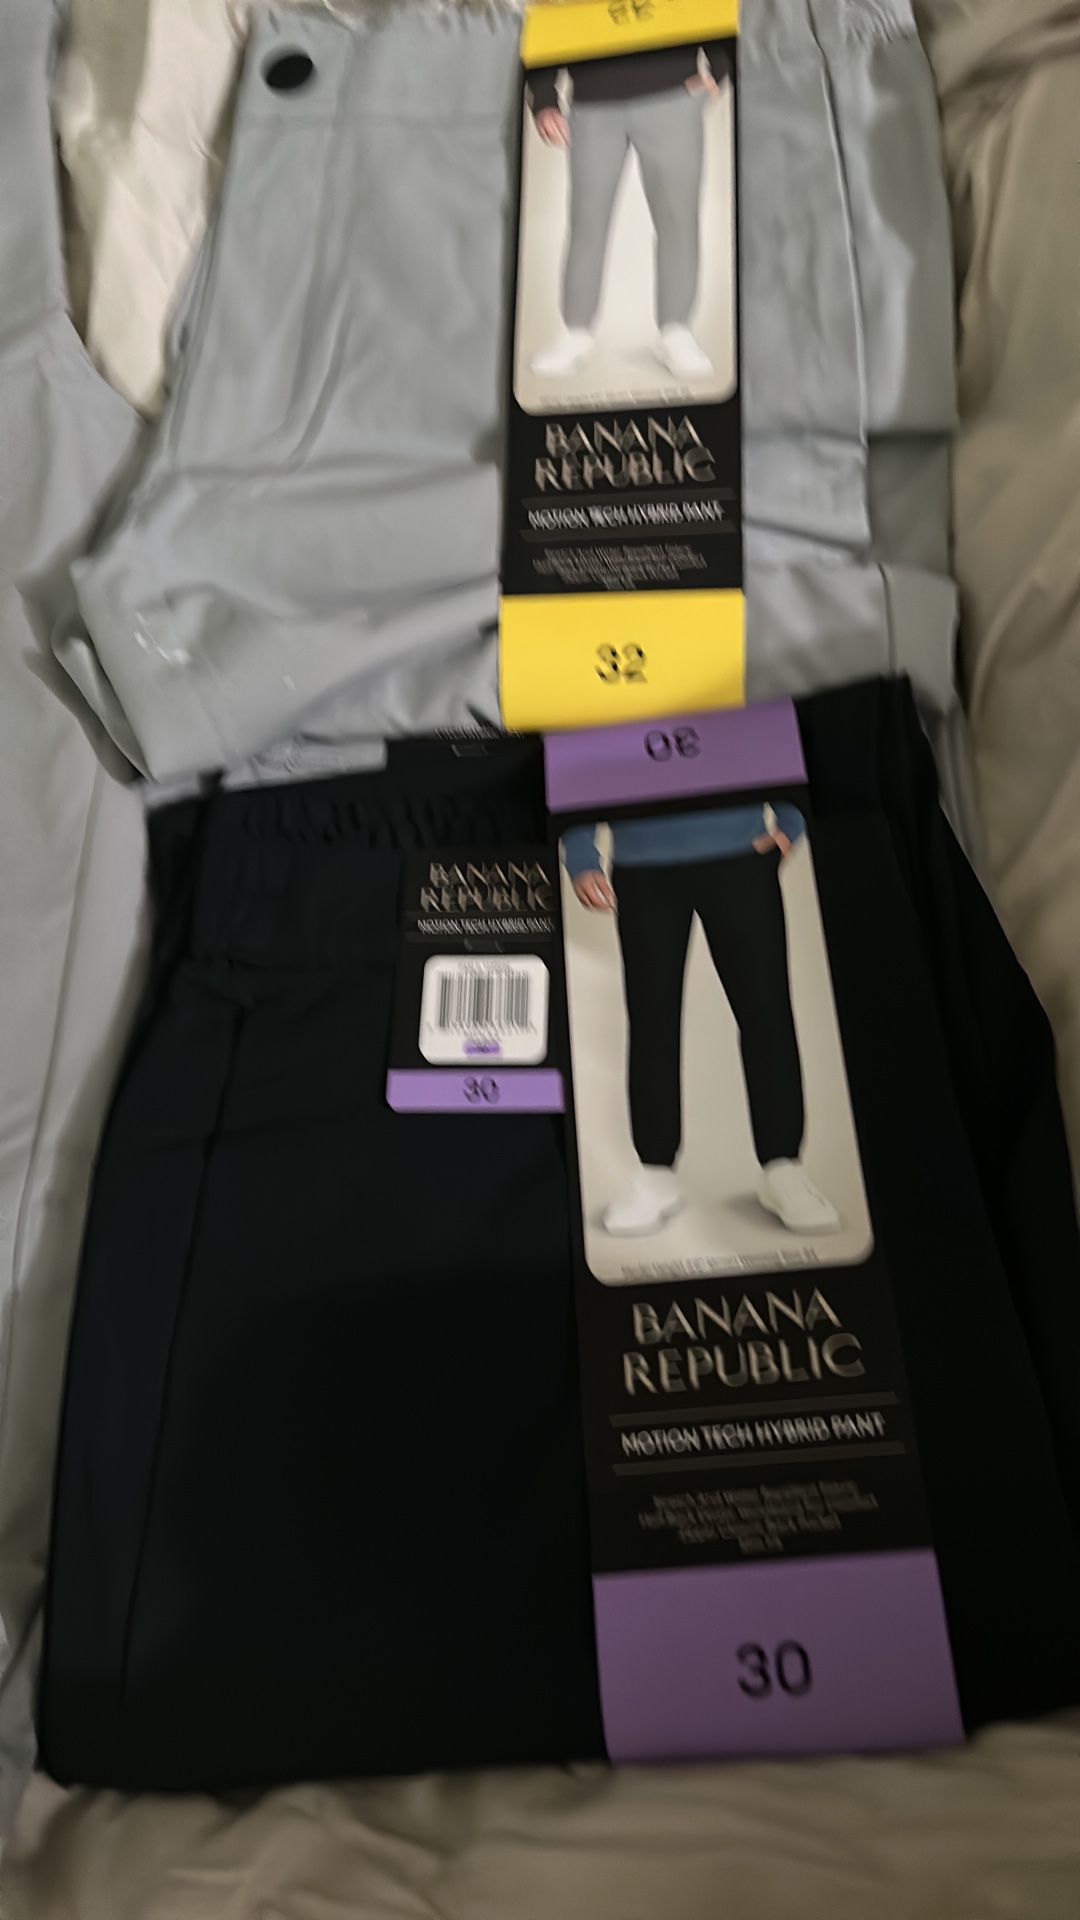 Pantalones Para Hombre Banana Republic Solo Tallas 32 34 Colores Azul Y Gris 